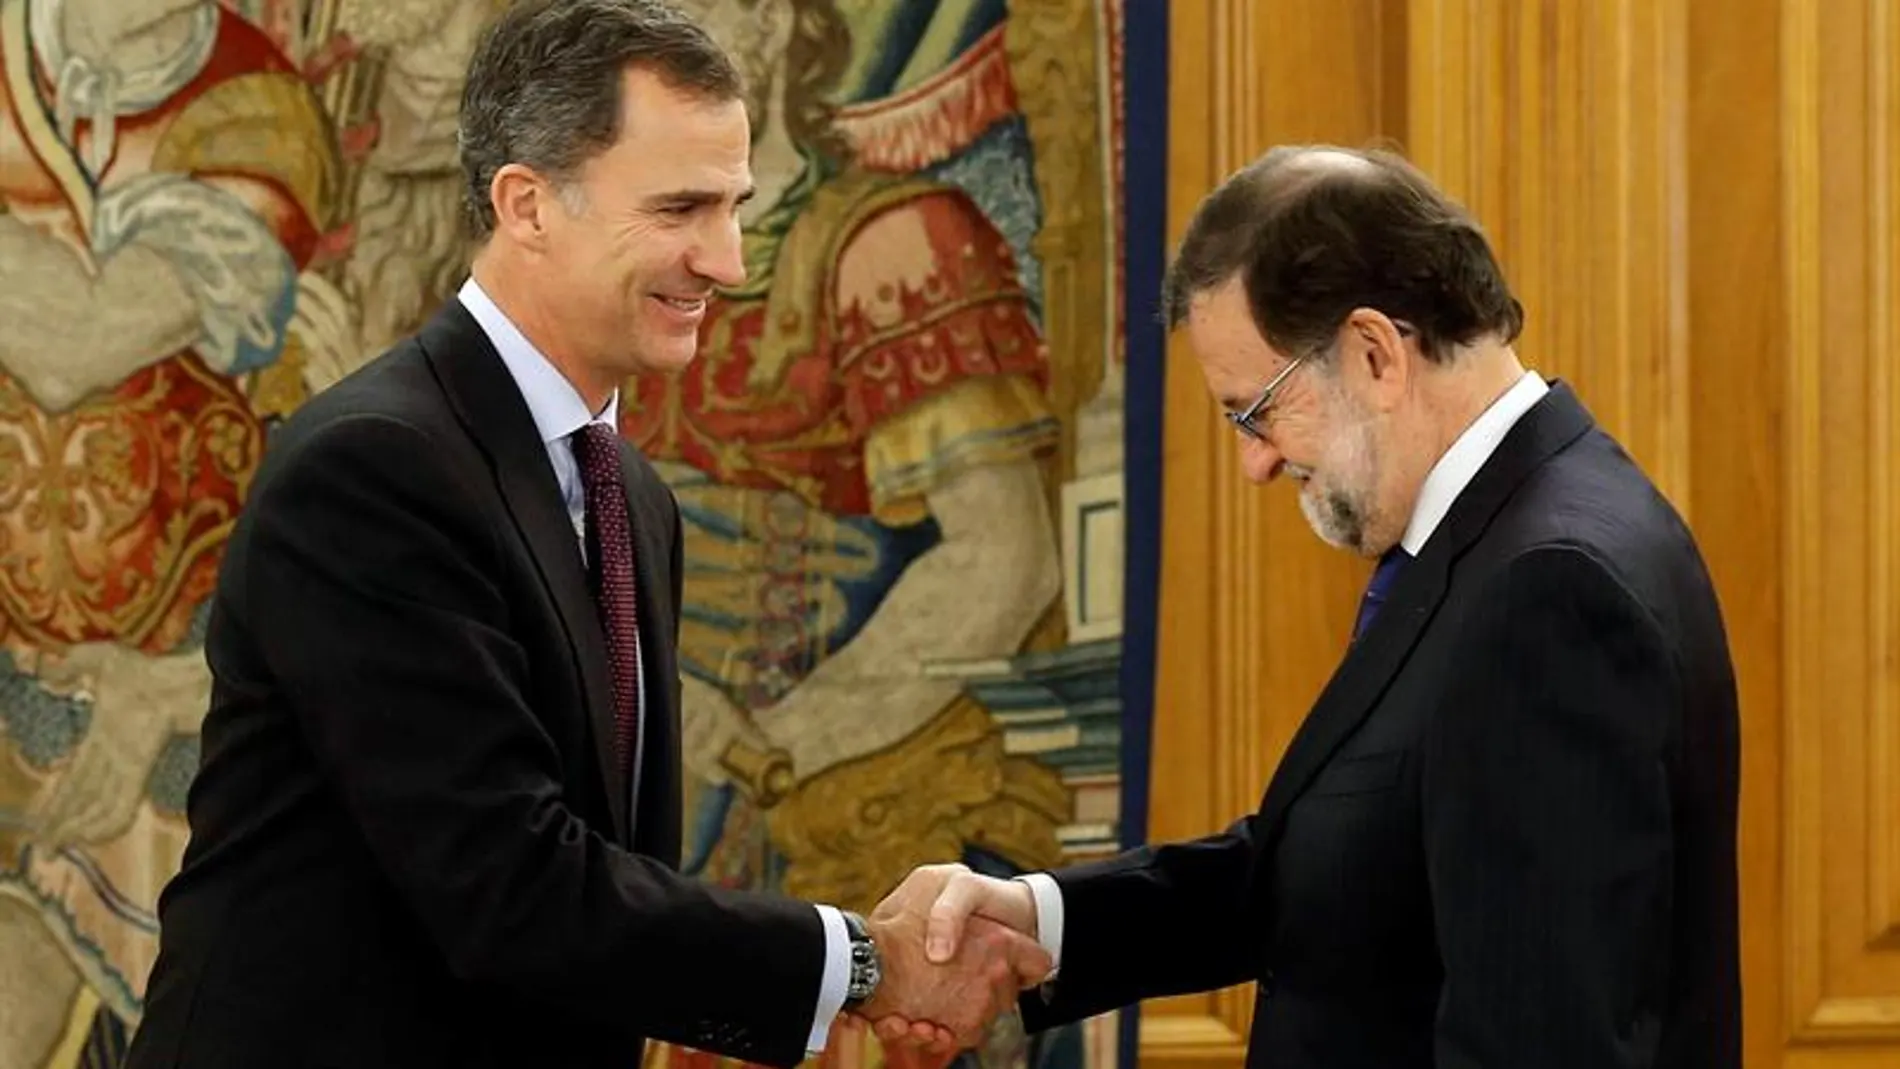 El rey Felipe VI saluda a Mariano Rajoy